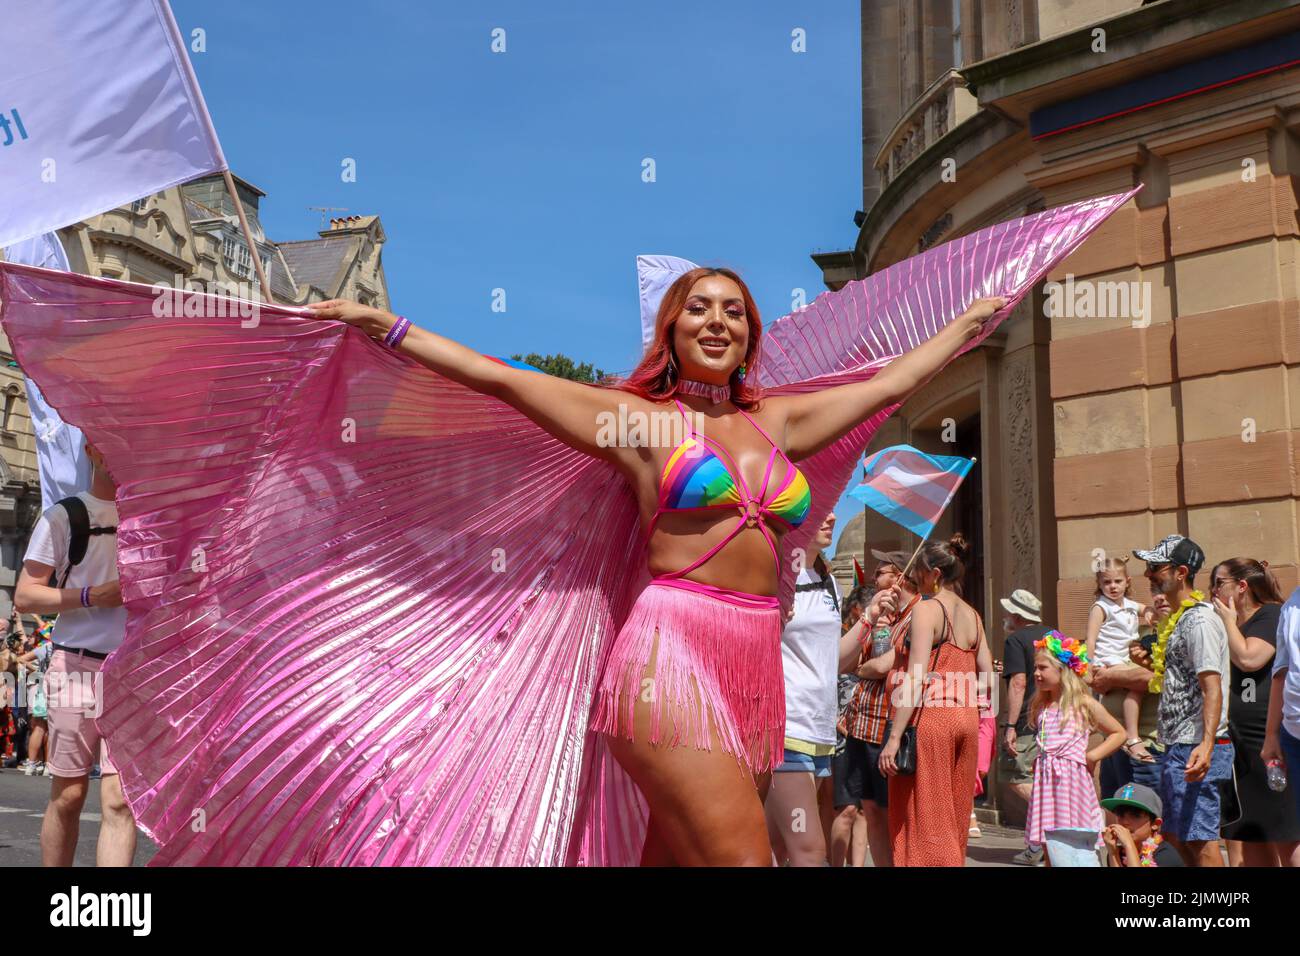 Miles de personas salieron hoy a llenar las calles de la ciudad de Brighton para el desfile anual del Orgullo que está celebrando su atrasado 30th aniversario. Declaración de Pride Brighton Después de 2 años de no poder celebrar el Orgullo en nuestra ciudad, nos complace anunciar el tema para el (retrasado) 30th aniversario Brighton & Hove Pride LGBTQ+ Community Parade 2022 El sábado 6th de agosto será 'Amor, Protesta & Unidad'. Nuestro tema fue creado después de los comentarios positivos de los grupos comunitarios y para abrazar nuestros objetivos continuos de la campaña. Foto de stock